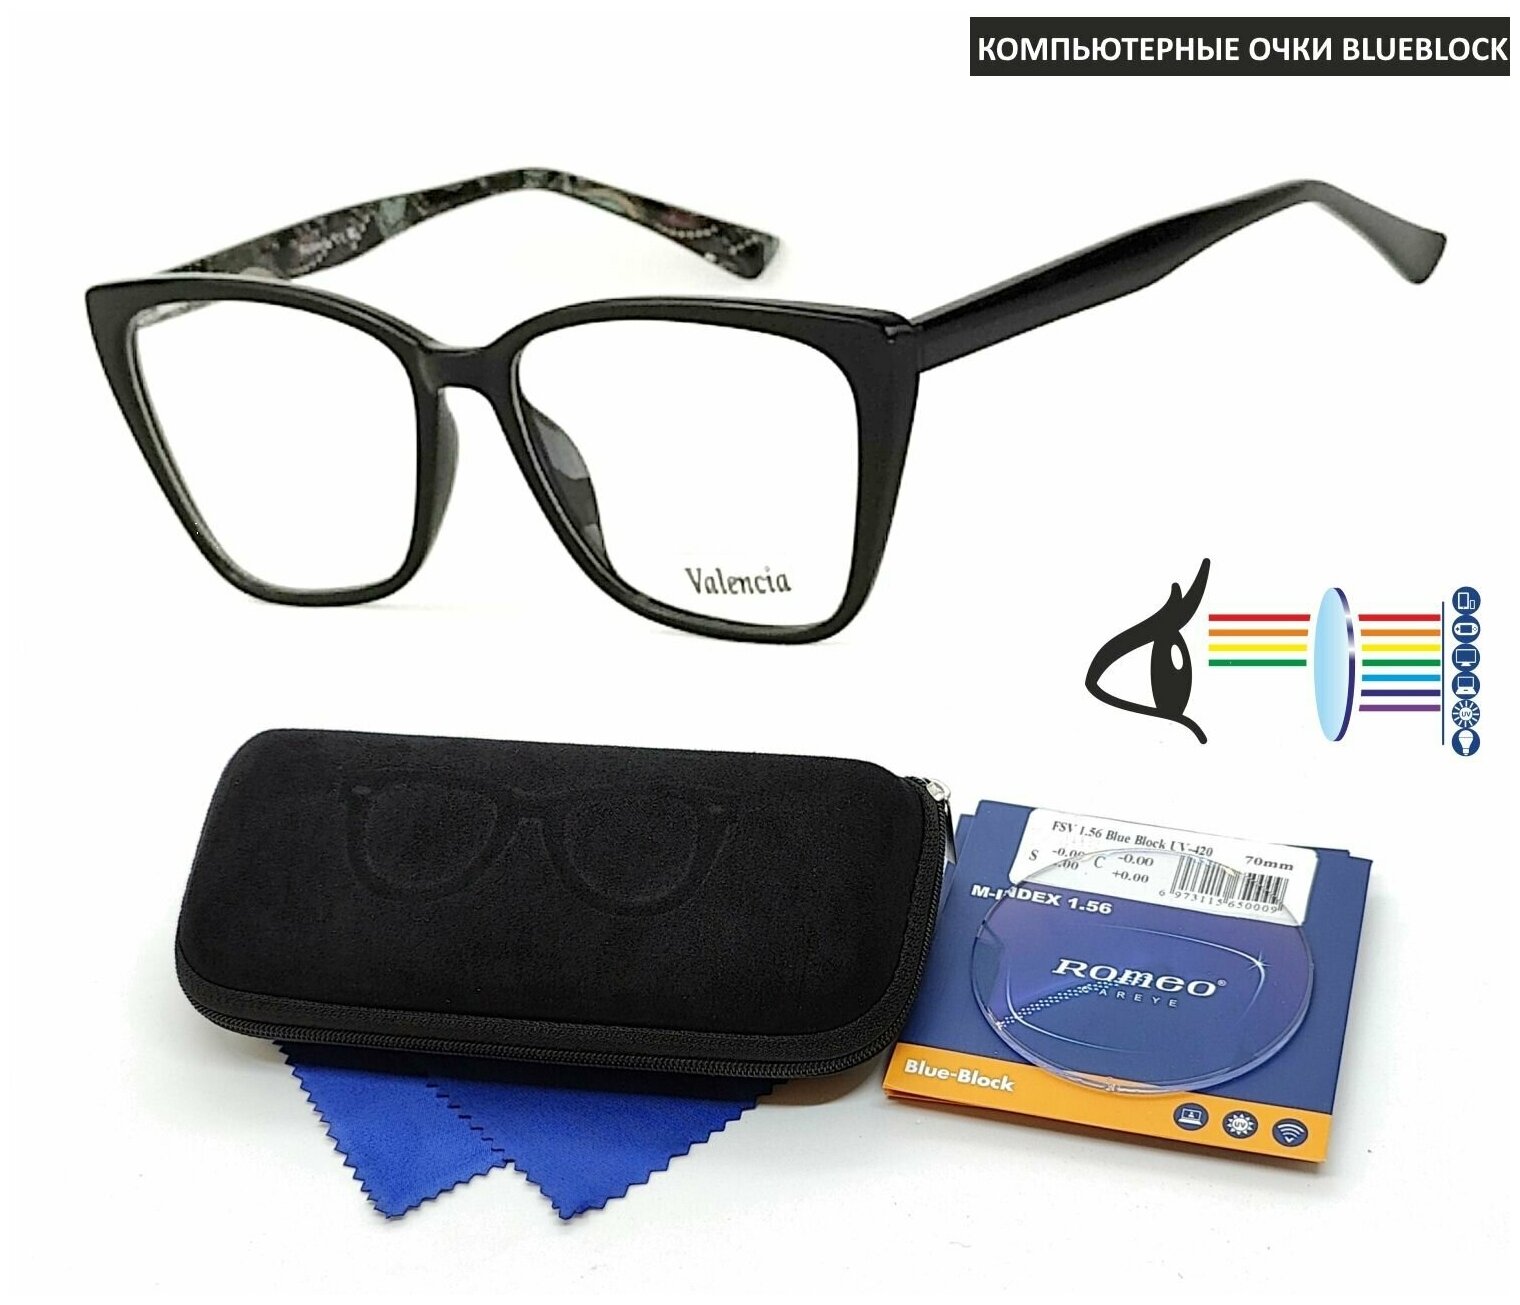 Компьютерные очки с футляром-змейка VALENCIA мод. 42317 Цвет 3 с линзами ROMEO 1.56 Blue Block -1.00 РЦ 64-66